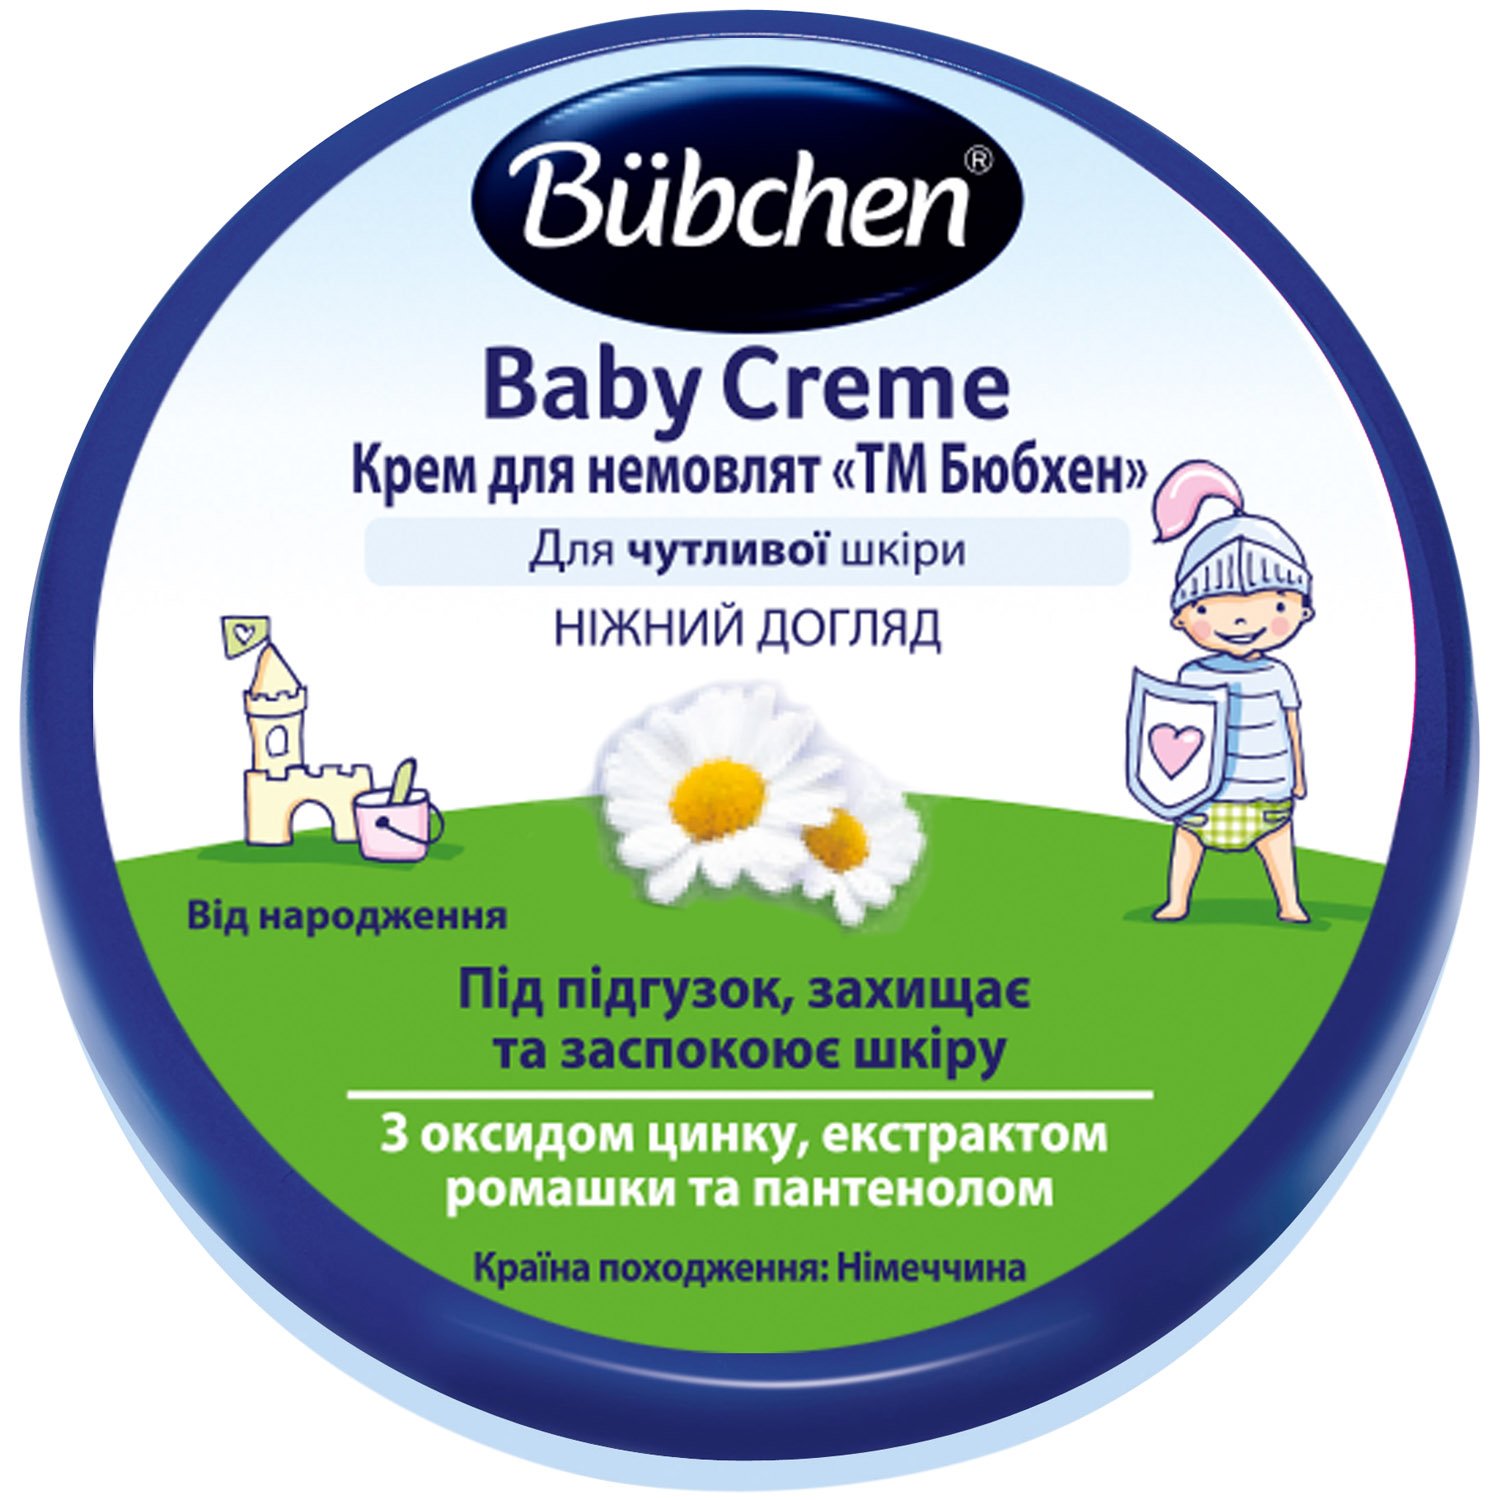 Фото - Засіб гігієни Bubchen Крем для немовлят , 20 мл 